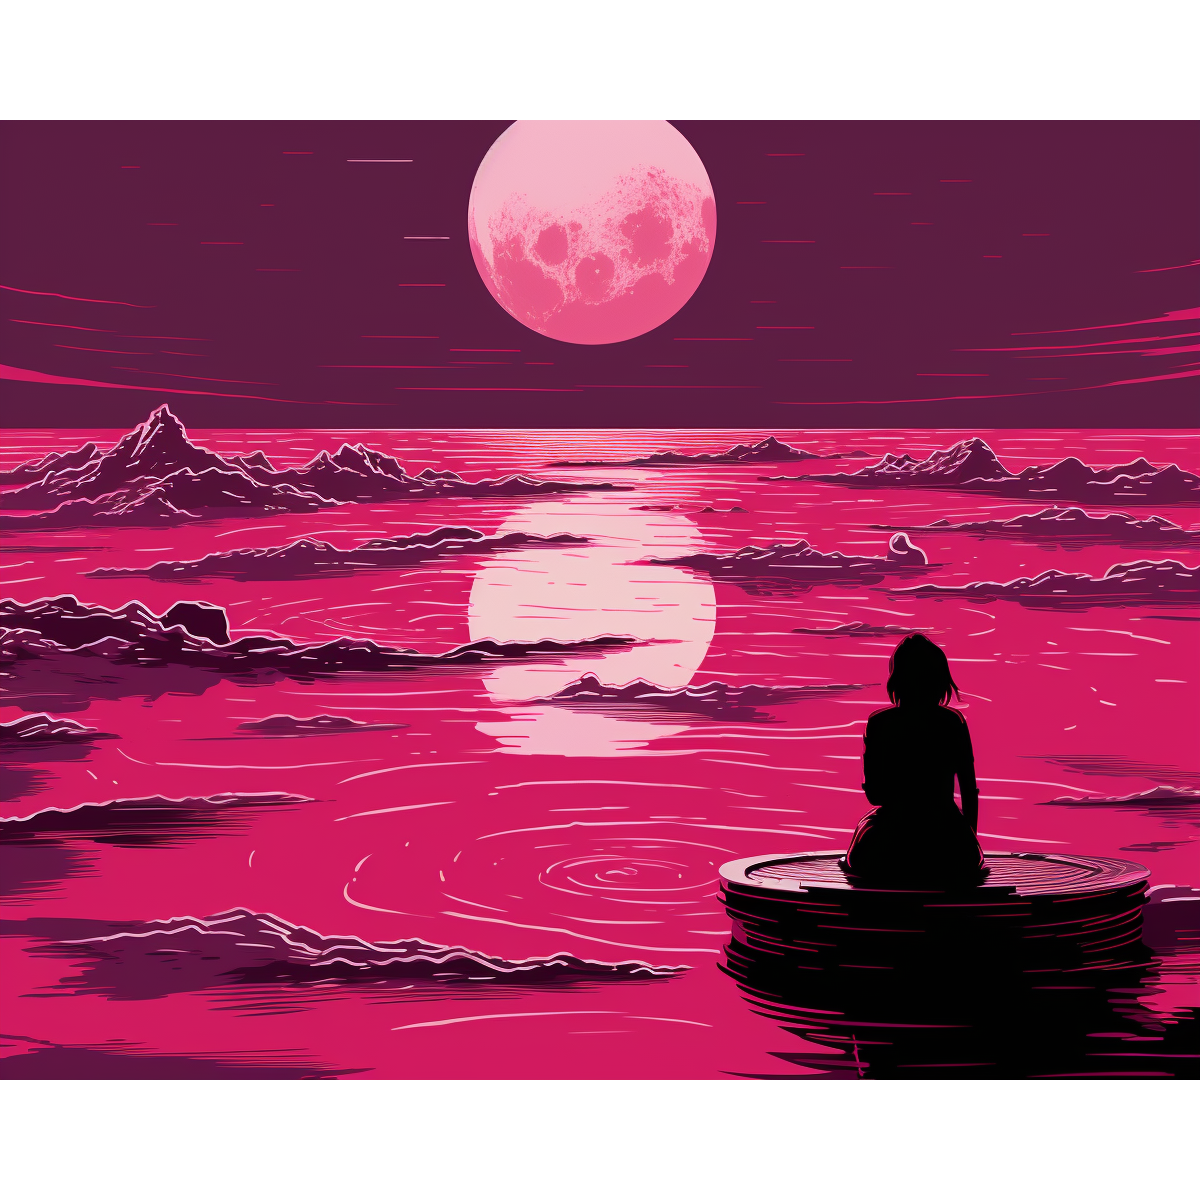 Luz de luna rosa